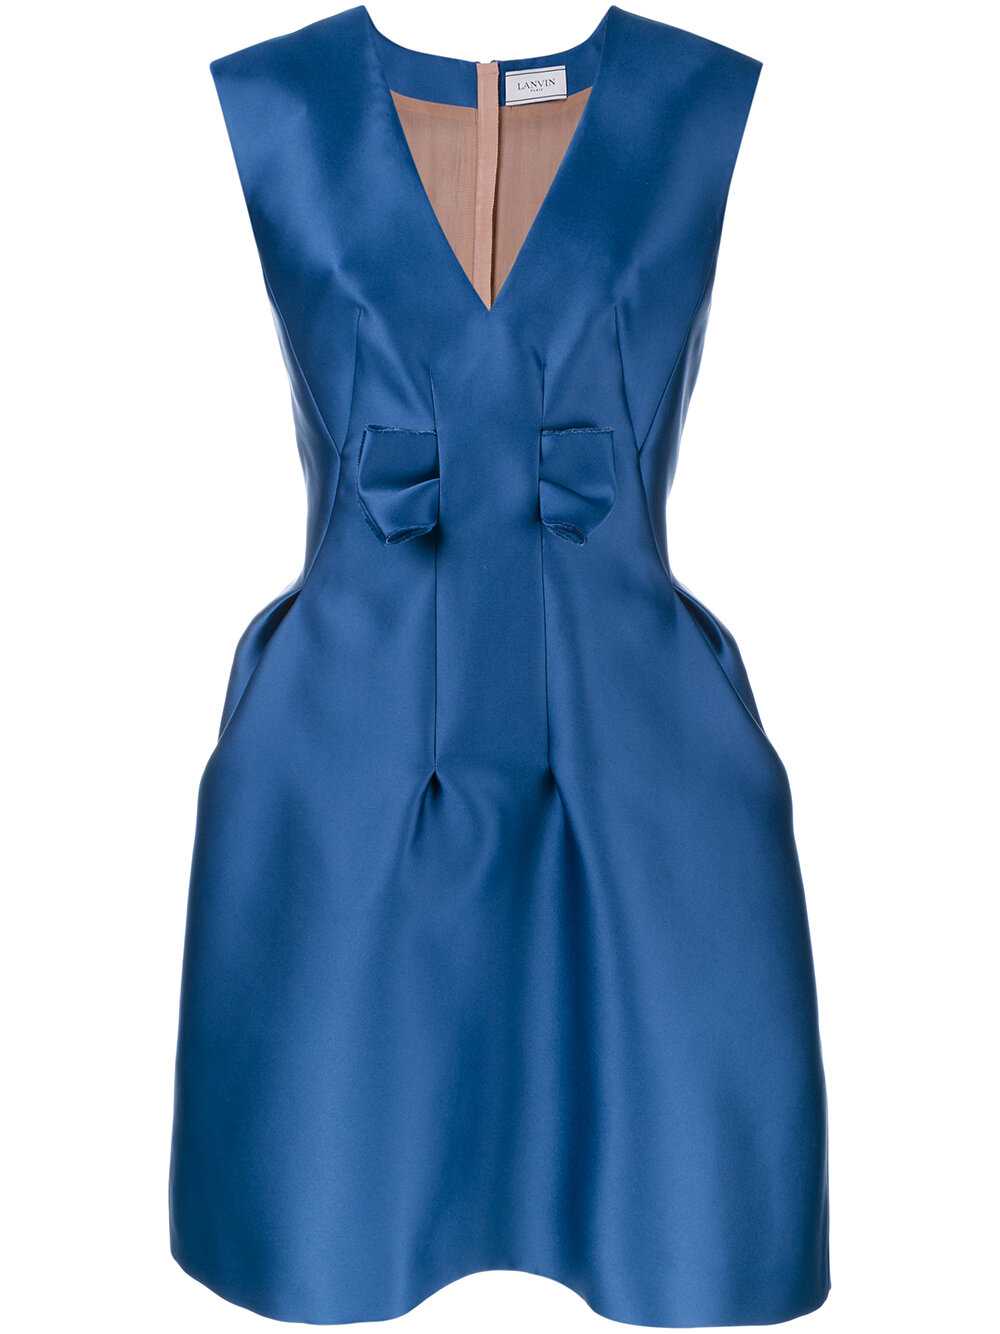 Lanvin Bow-Embellished Satin Dress in Blue.jpg